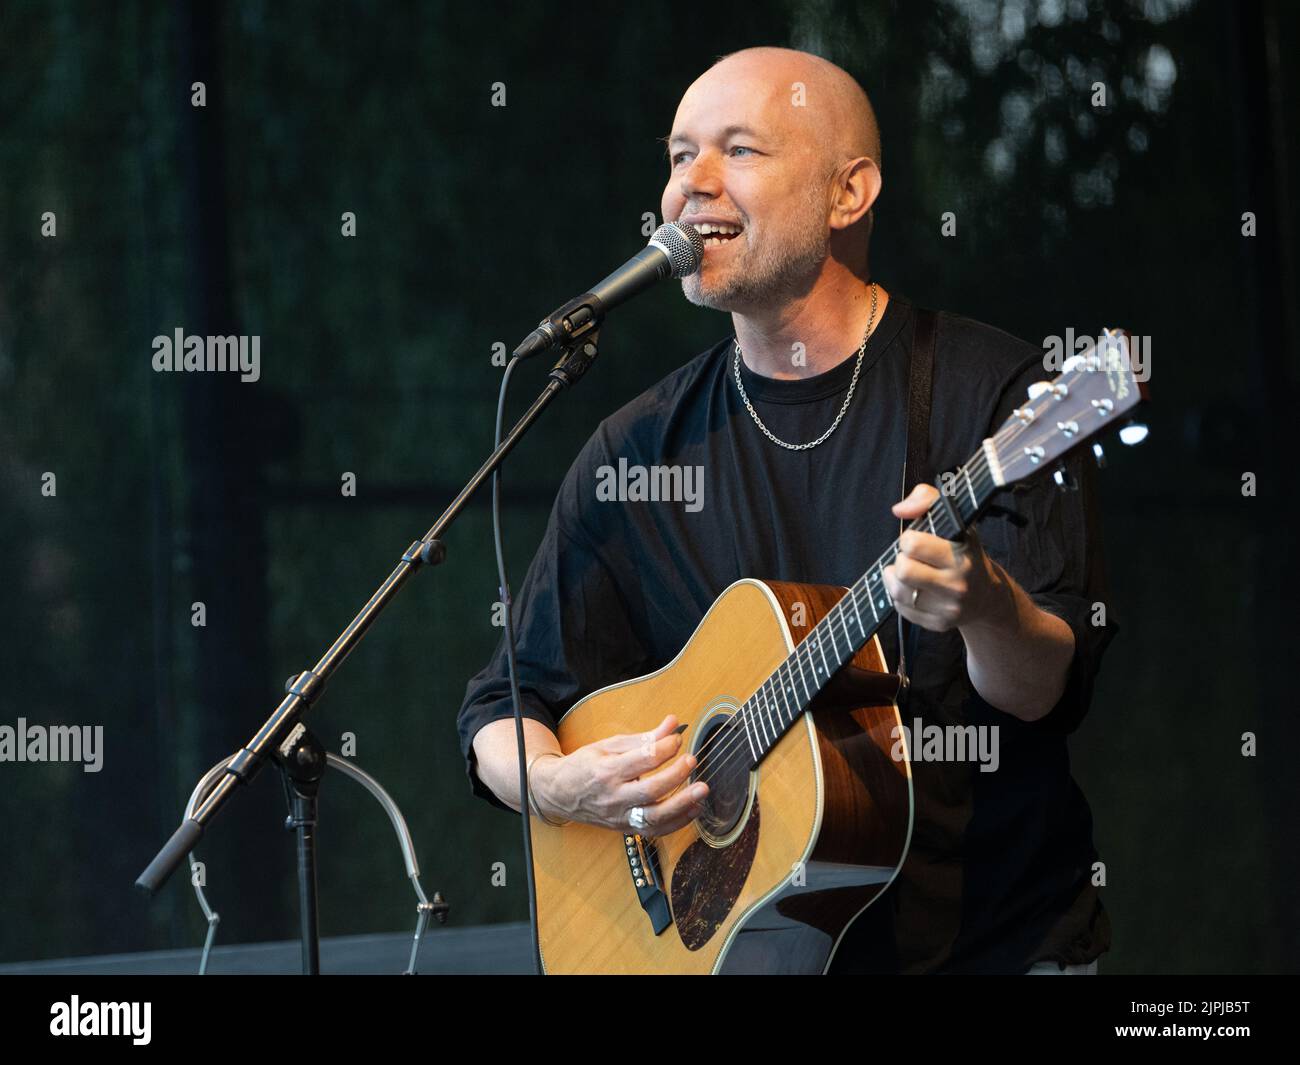 El cantautor sueco Tomas Andersson Wij actúa en Refvens grund durante el Festival de Agosto de 2022 en Norrkoping, Suecia. Foto de stock